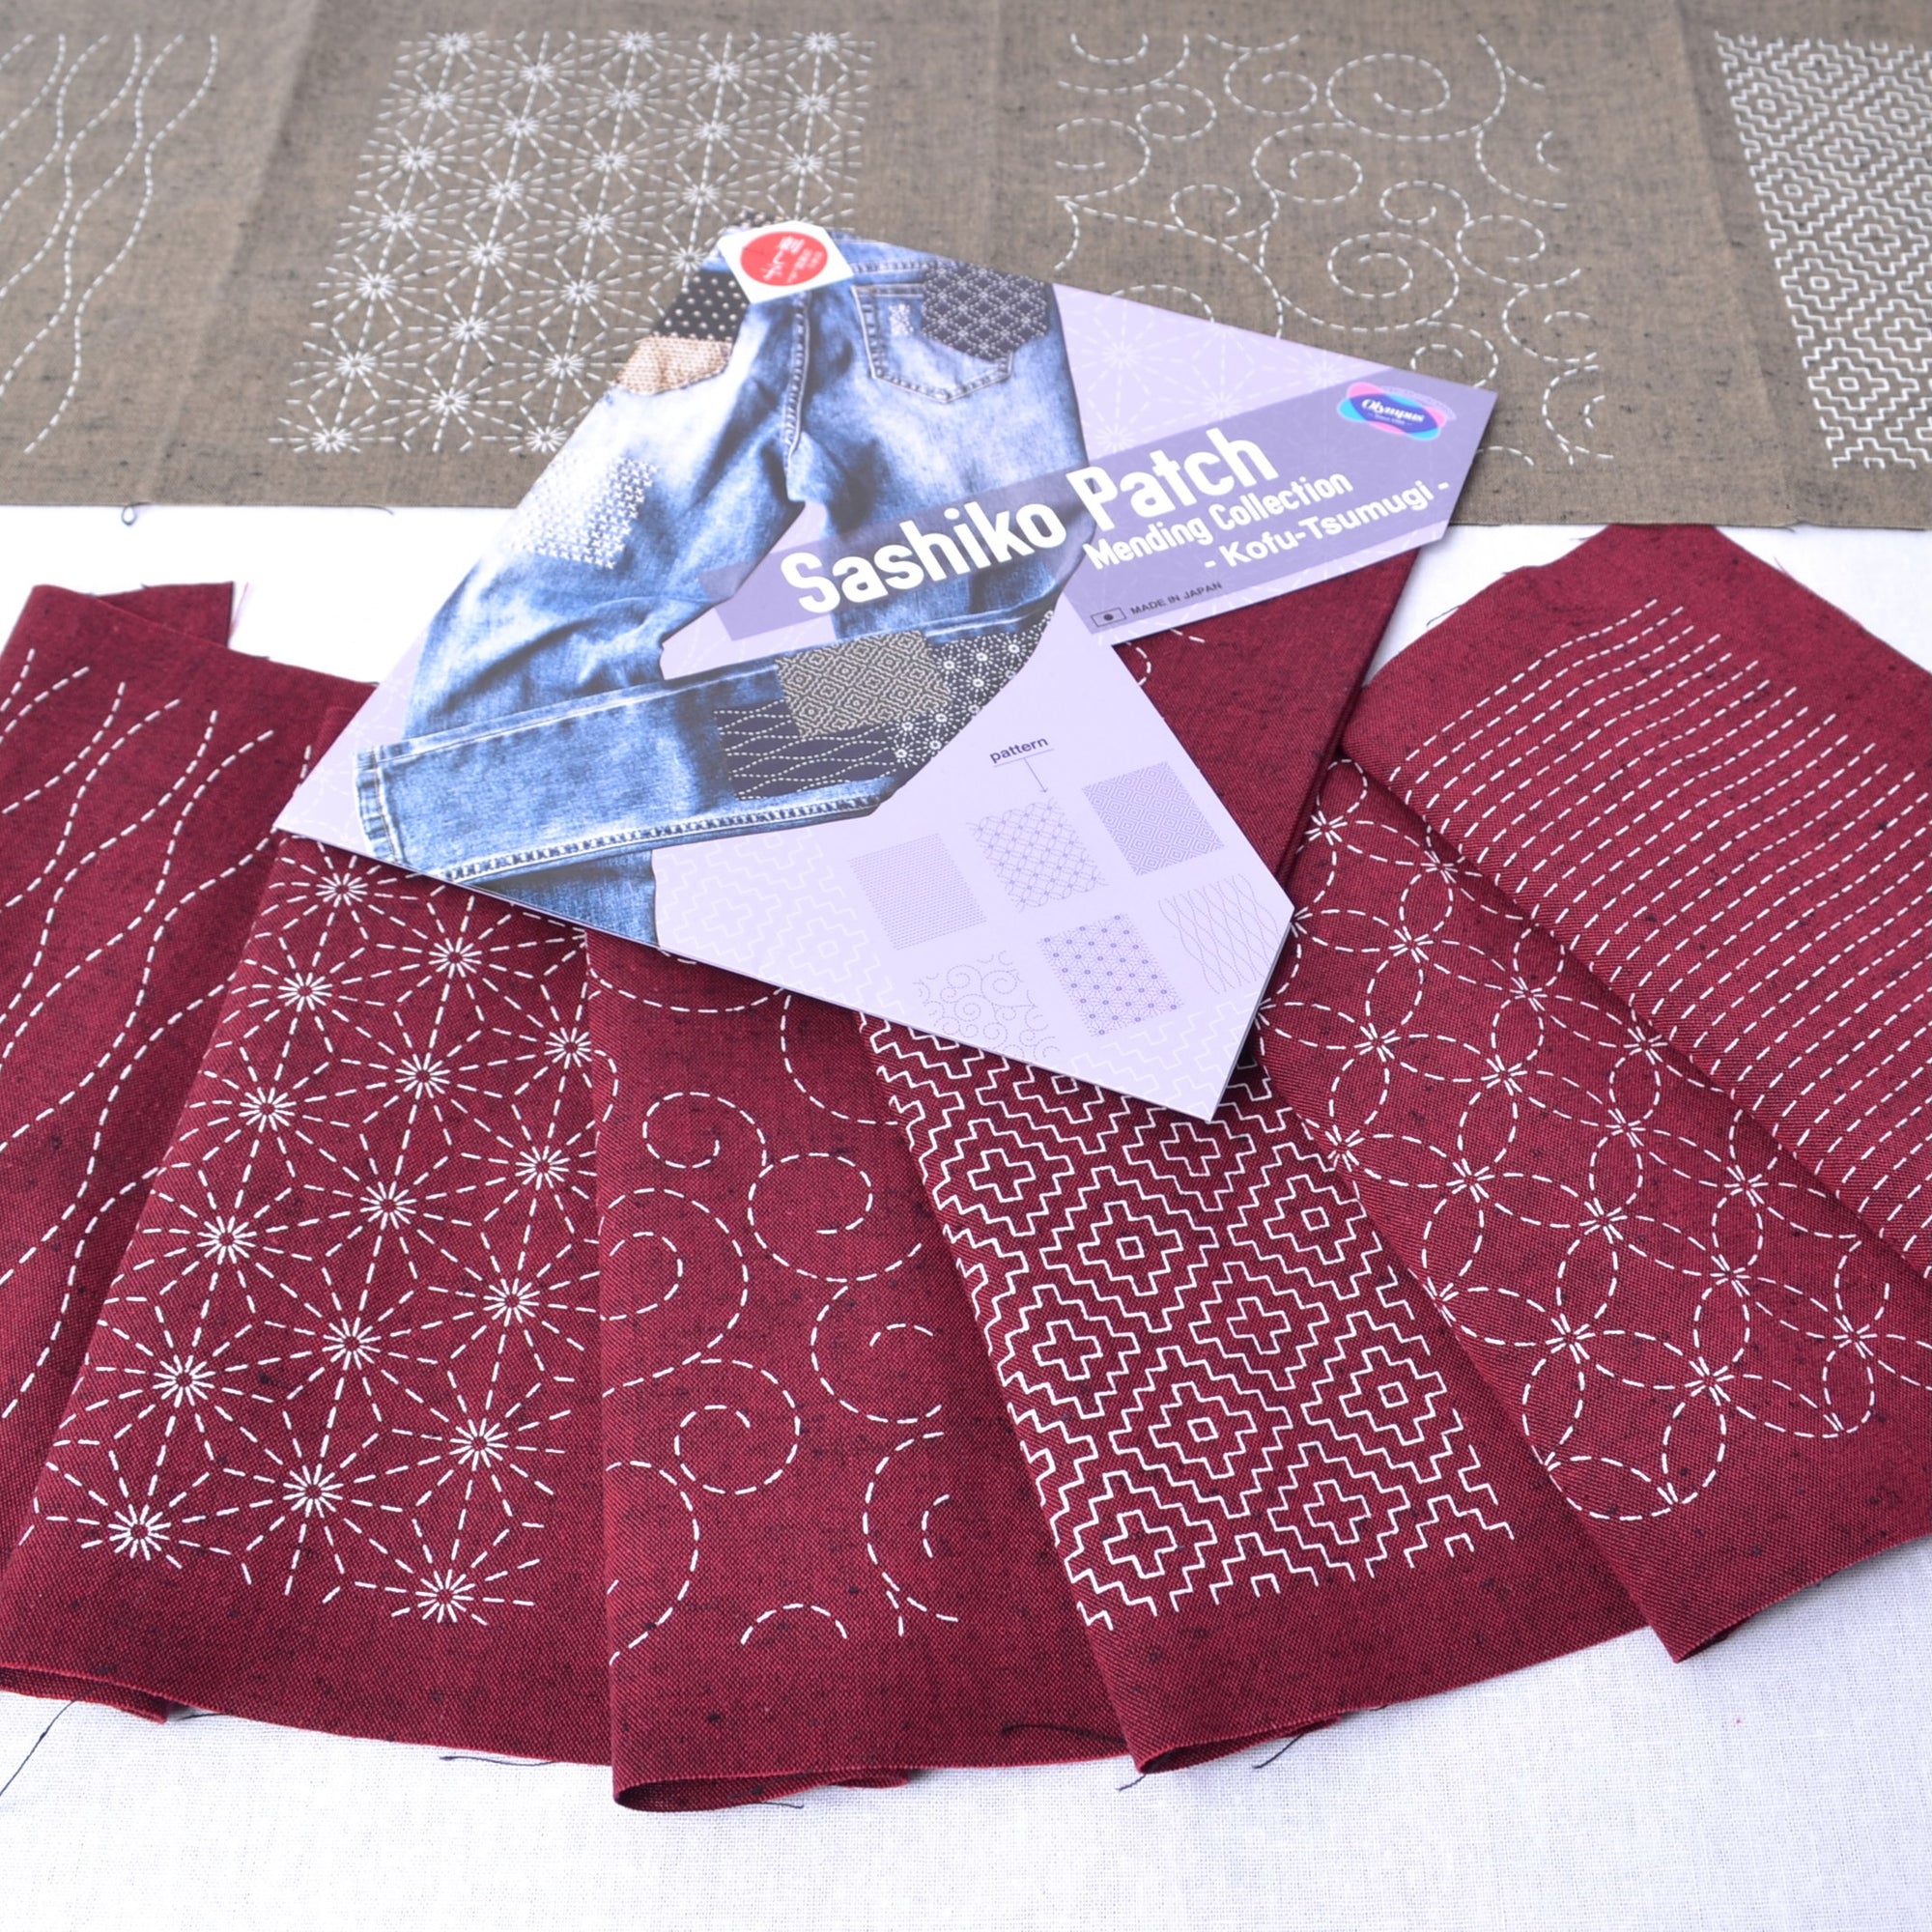 Red sashiko tsumugi fabric patches